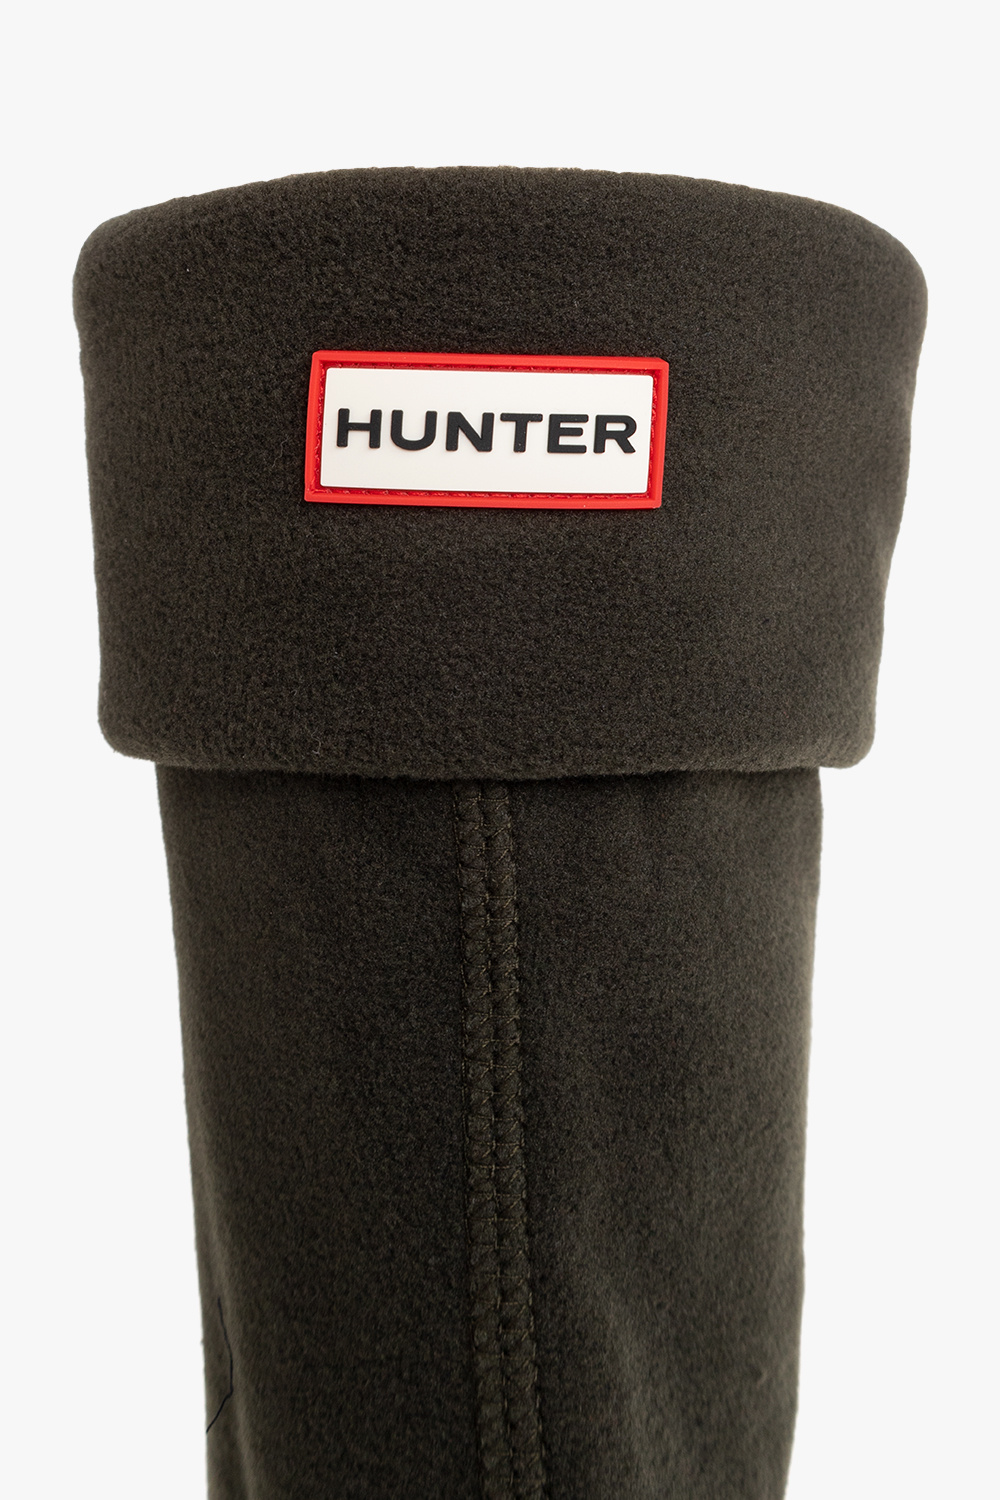 Hunter Tall boot socks